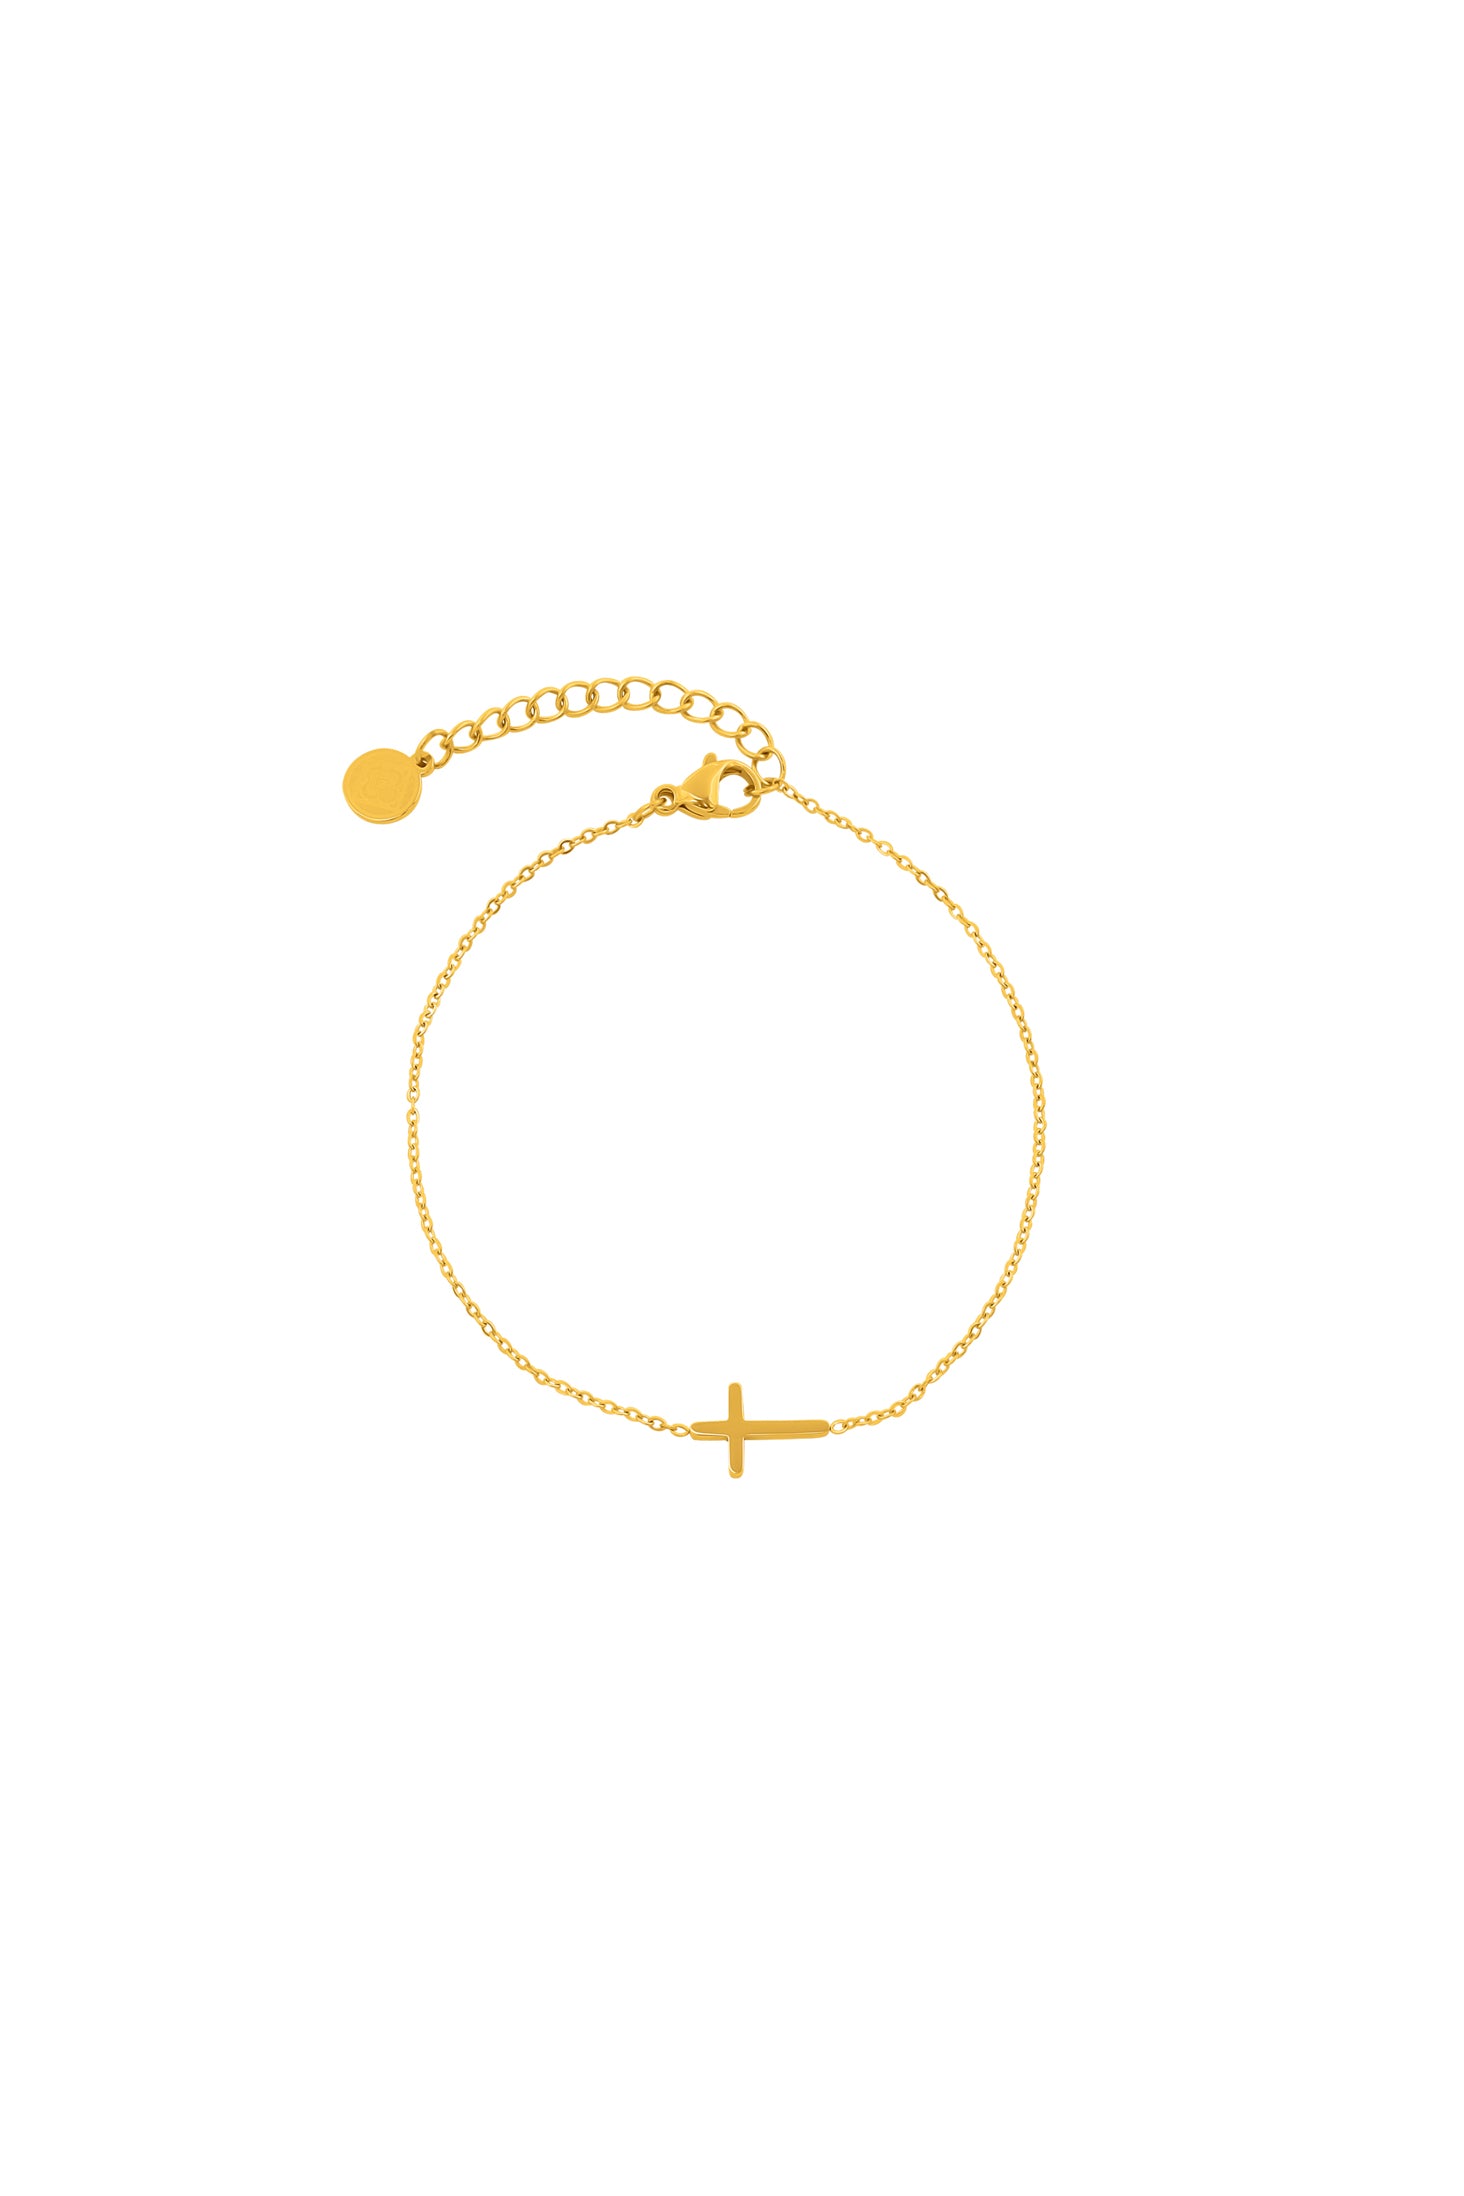 Kristoff Cross Bracelet